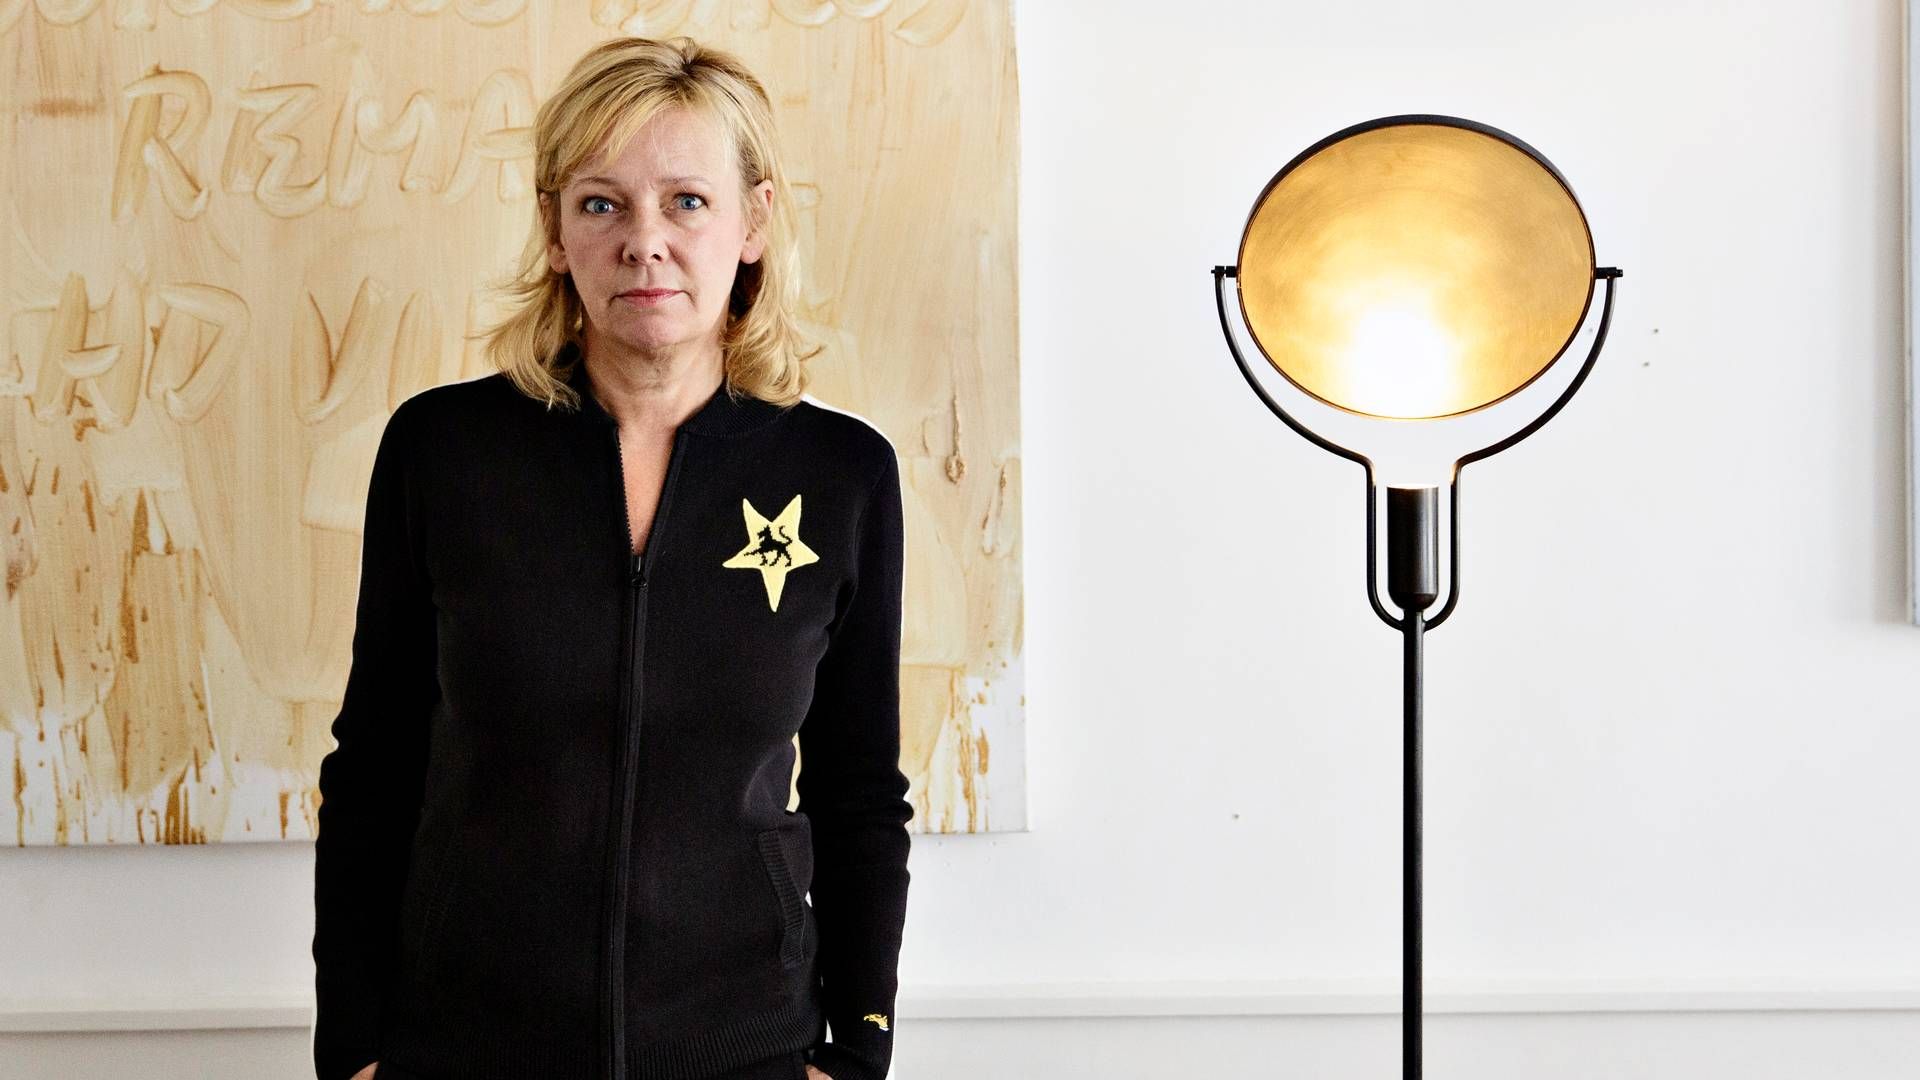 Jane Kønigs smykkefirma kører videre i en ny version. | Foto: Miriam Dalsgaard